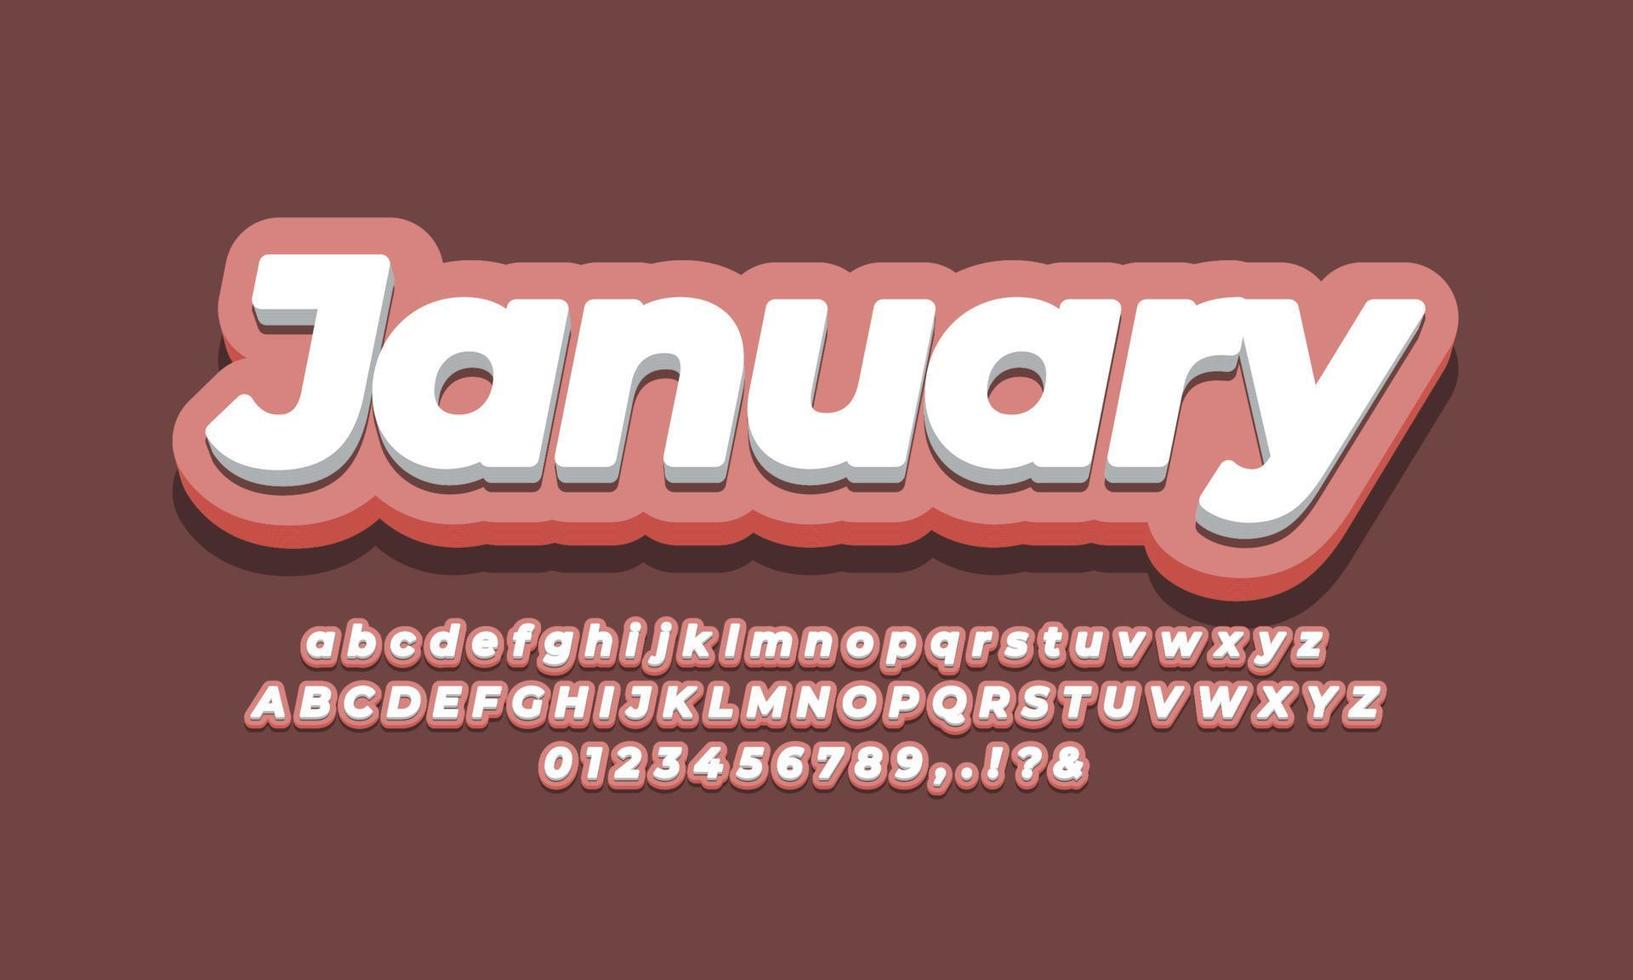 mese di gennaio testo 3d design rosa vettore